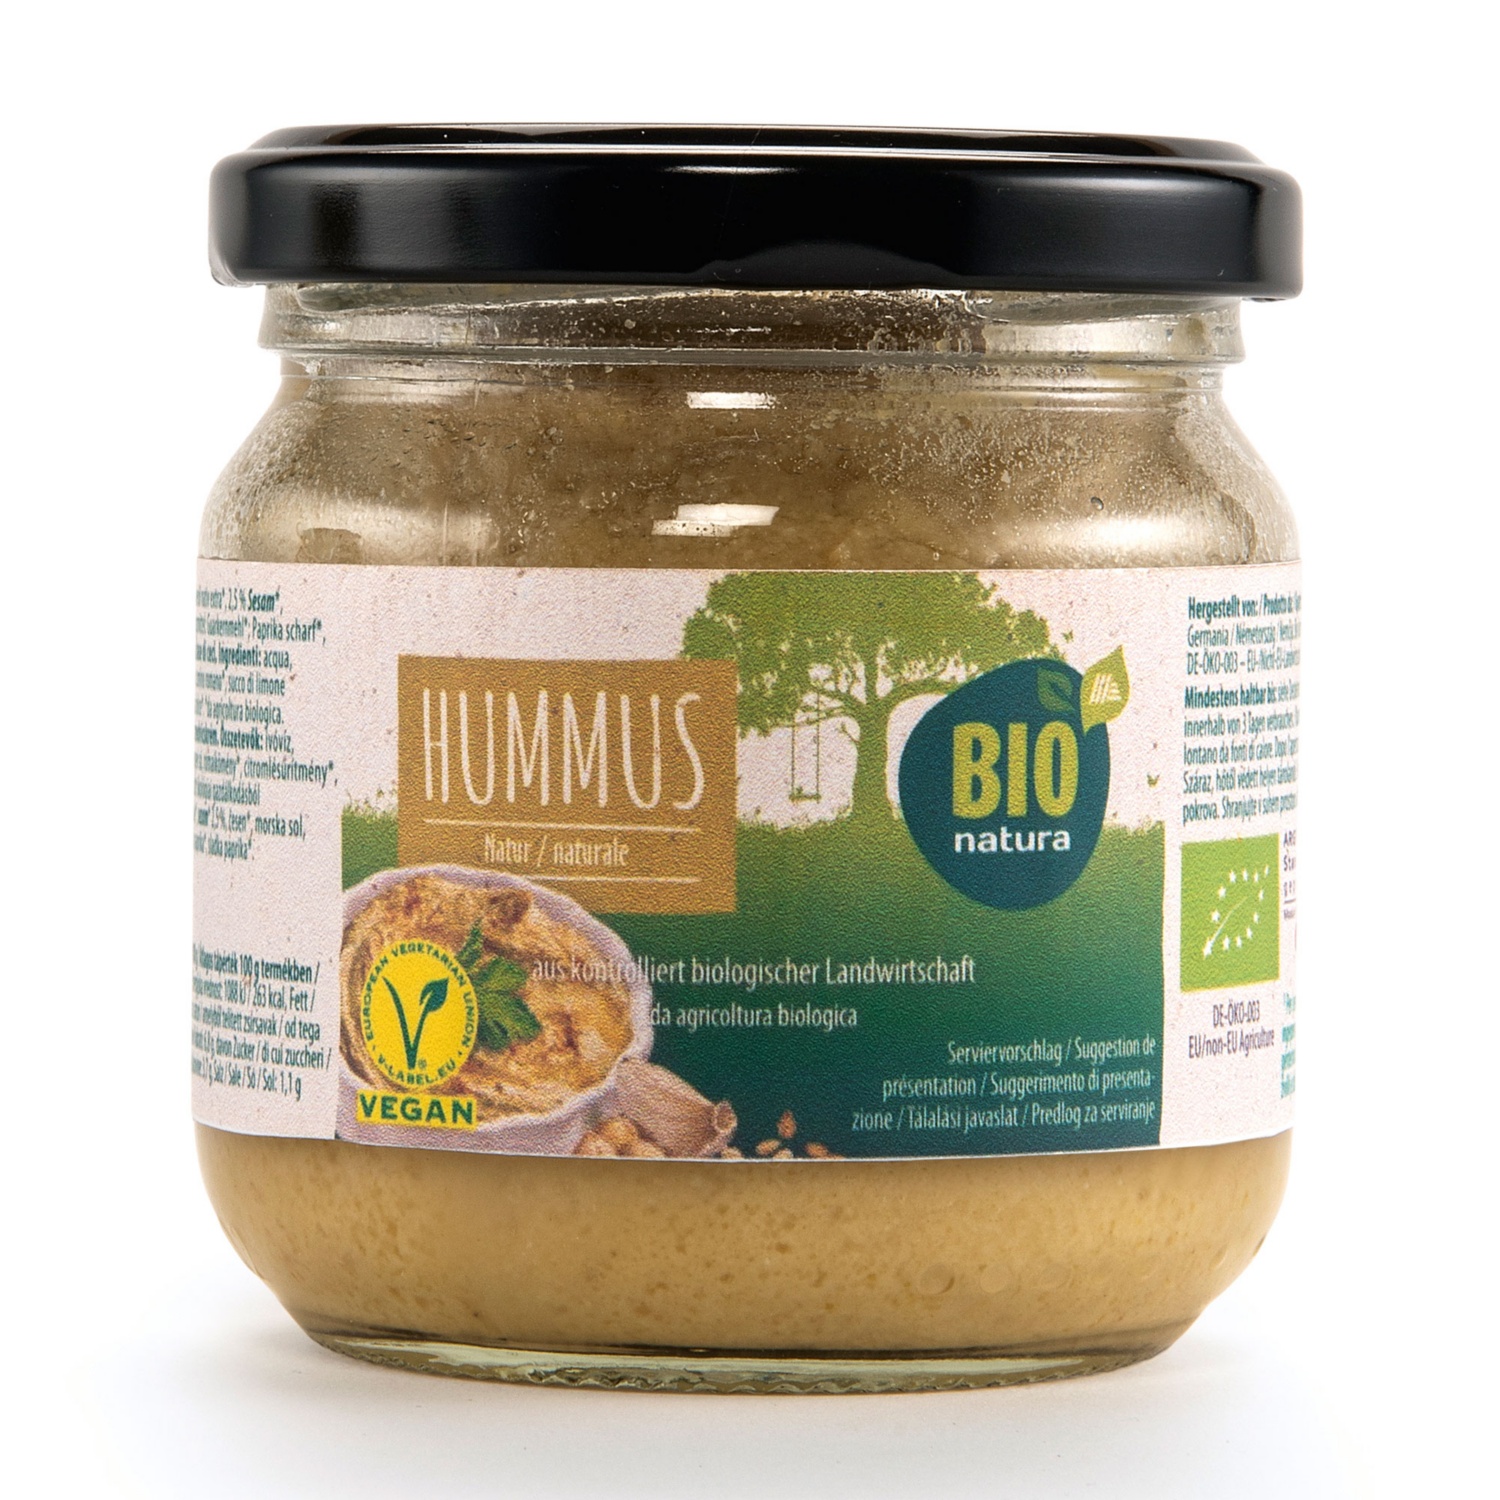 BIO NATURA Bio Hummus, Klassik